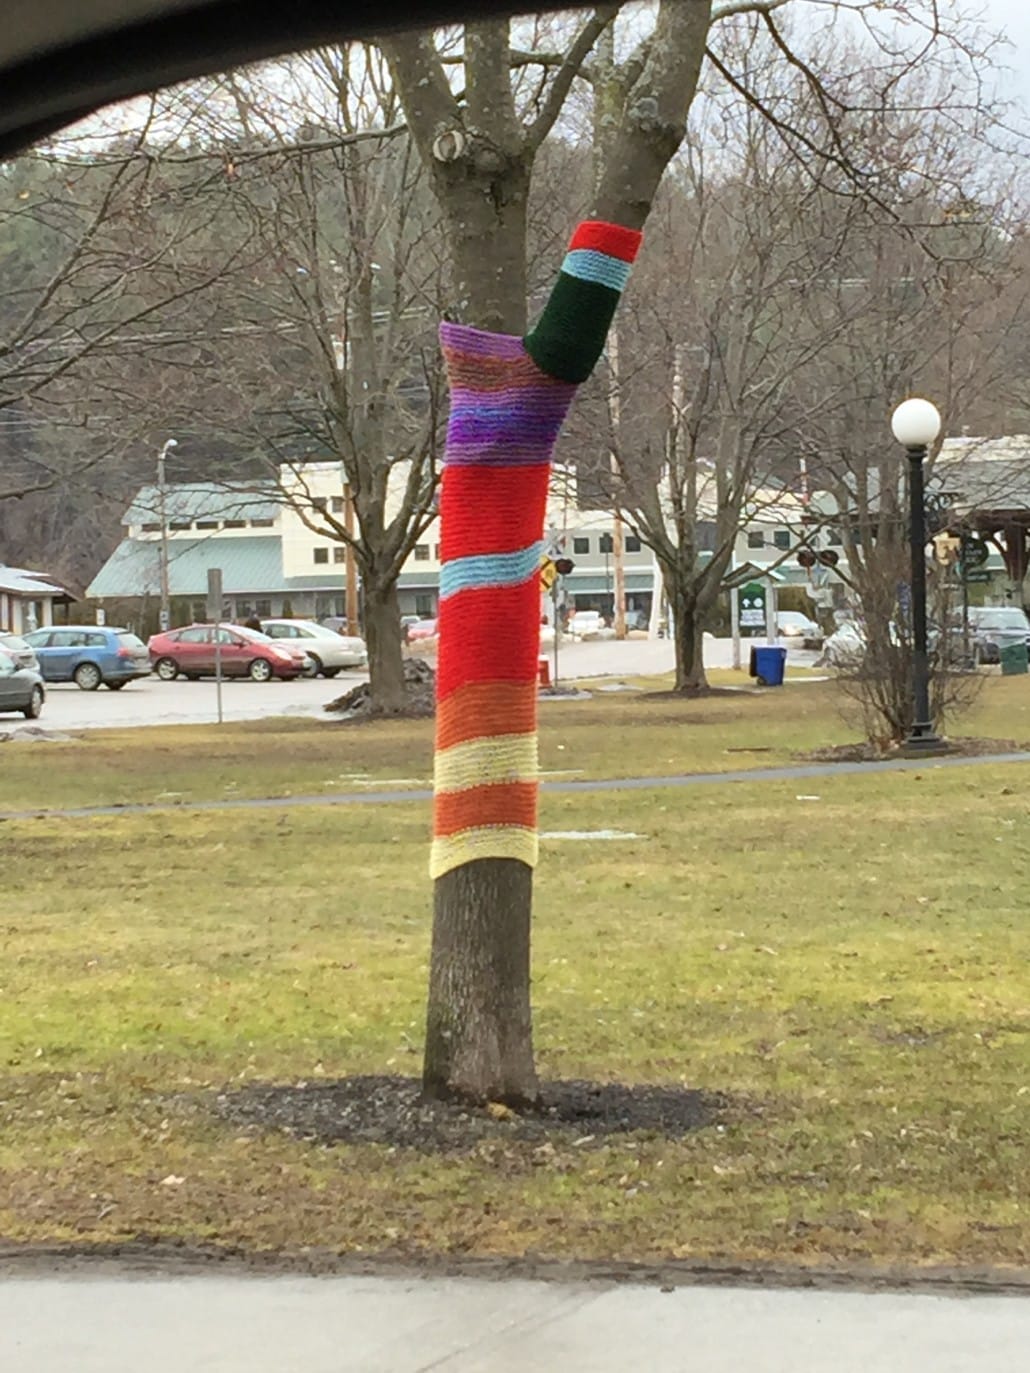 Tree sweater: SO Vermont!